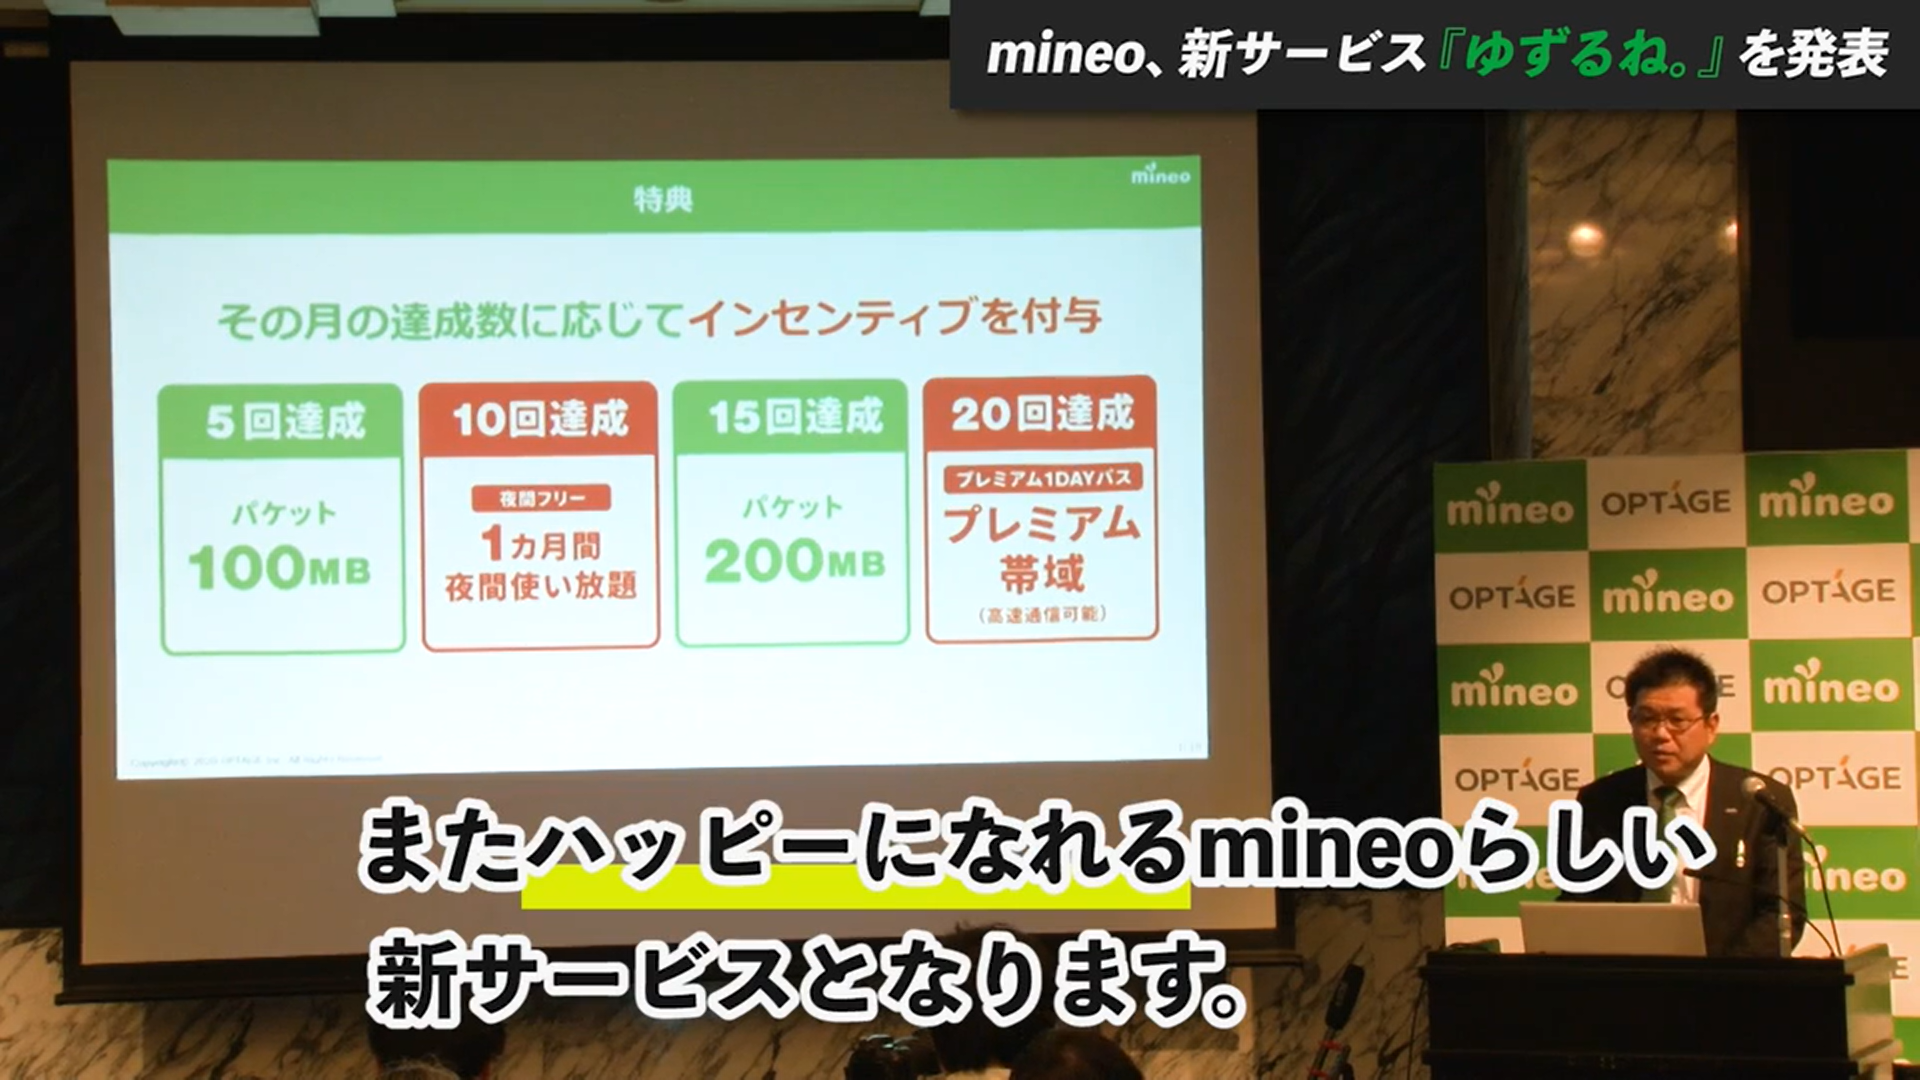 mineo「新サービス発表会」